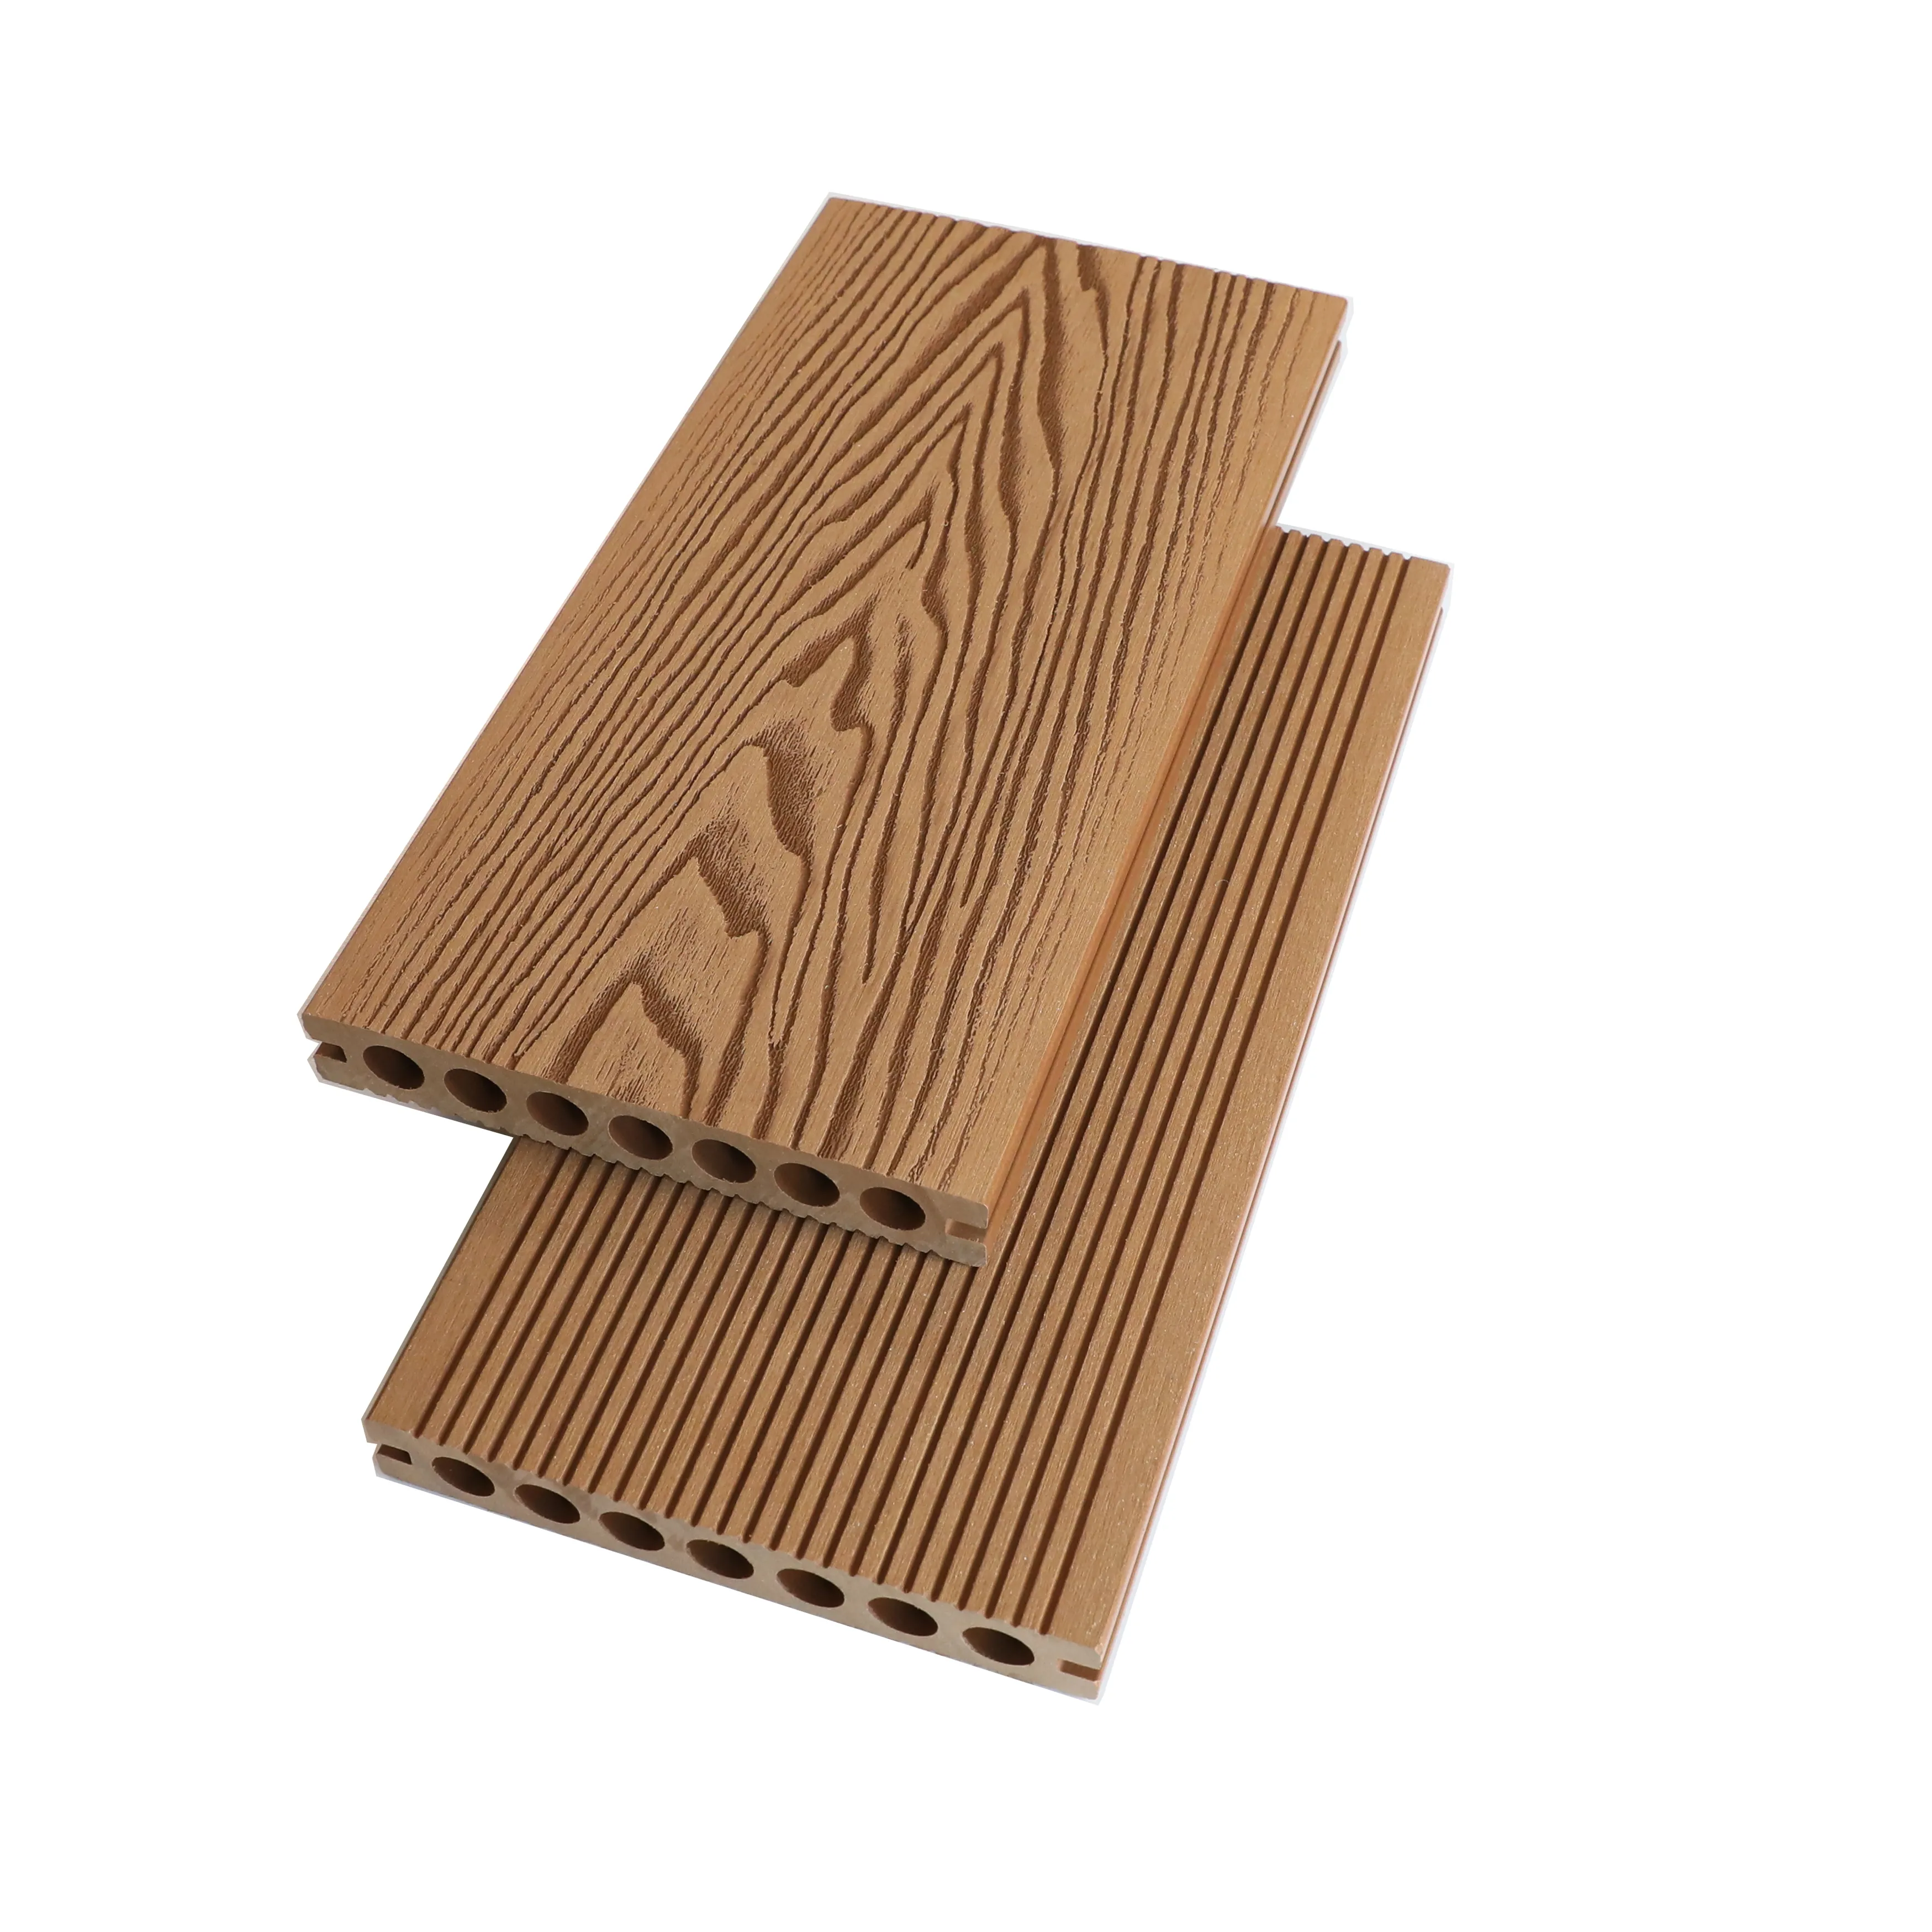 grey decking ghana teak hard wood parquet hardwood flooring wooden floor composite decking